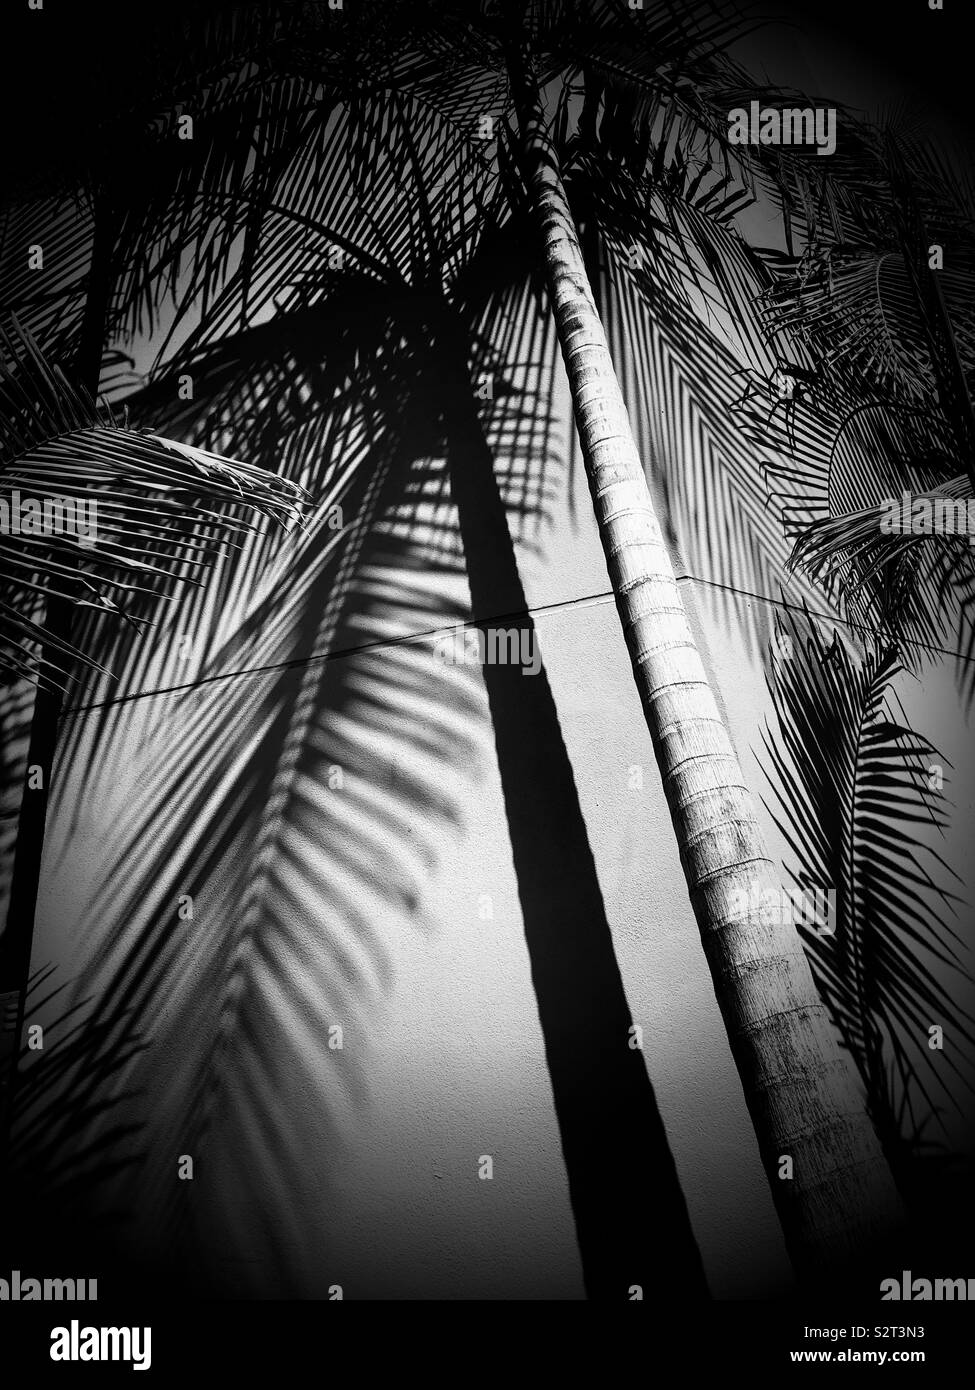 Palmier et ombres sur un mur, Los Angeles, Californie, USA. Banque D'Images